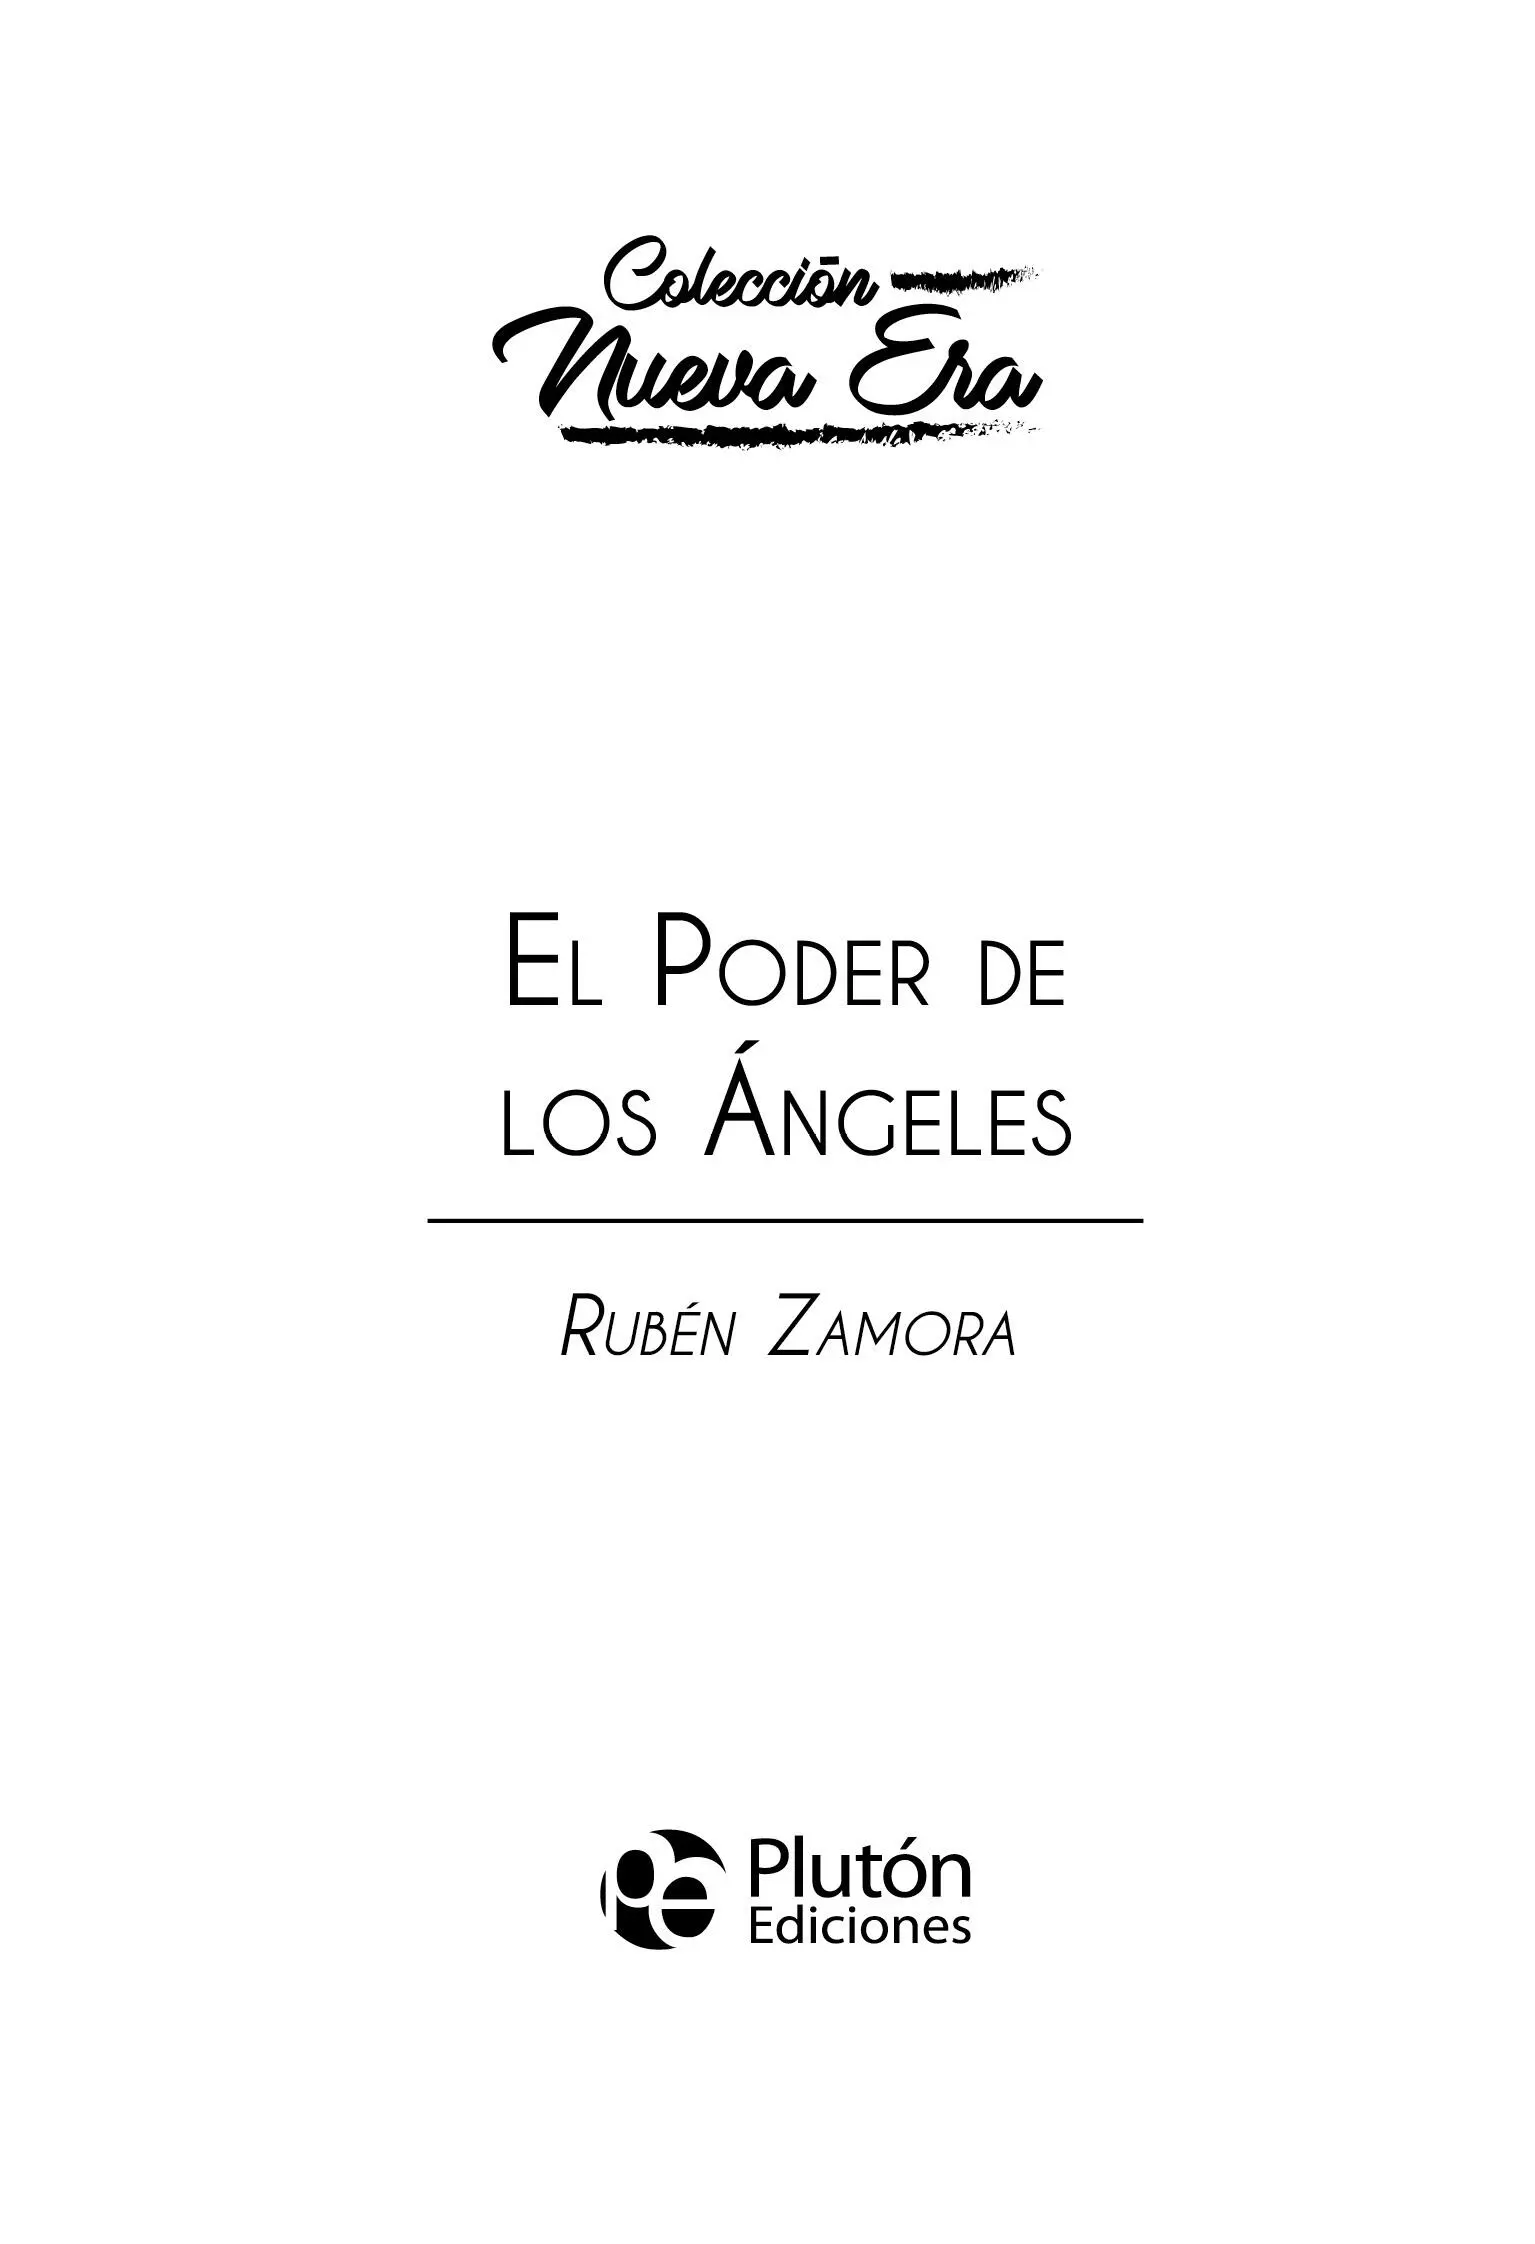 Plutón Ediciones X s l 2020 Diseño de cubierta y maquetación Saul Rojas - фото 1